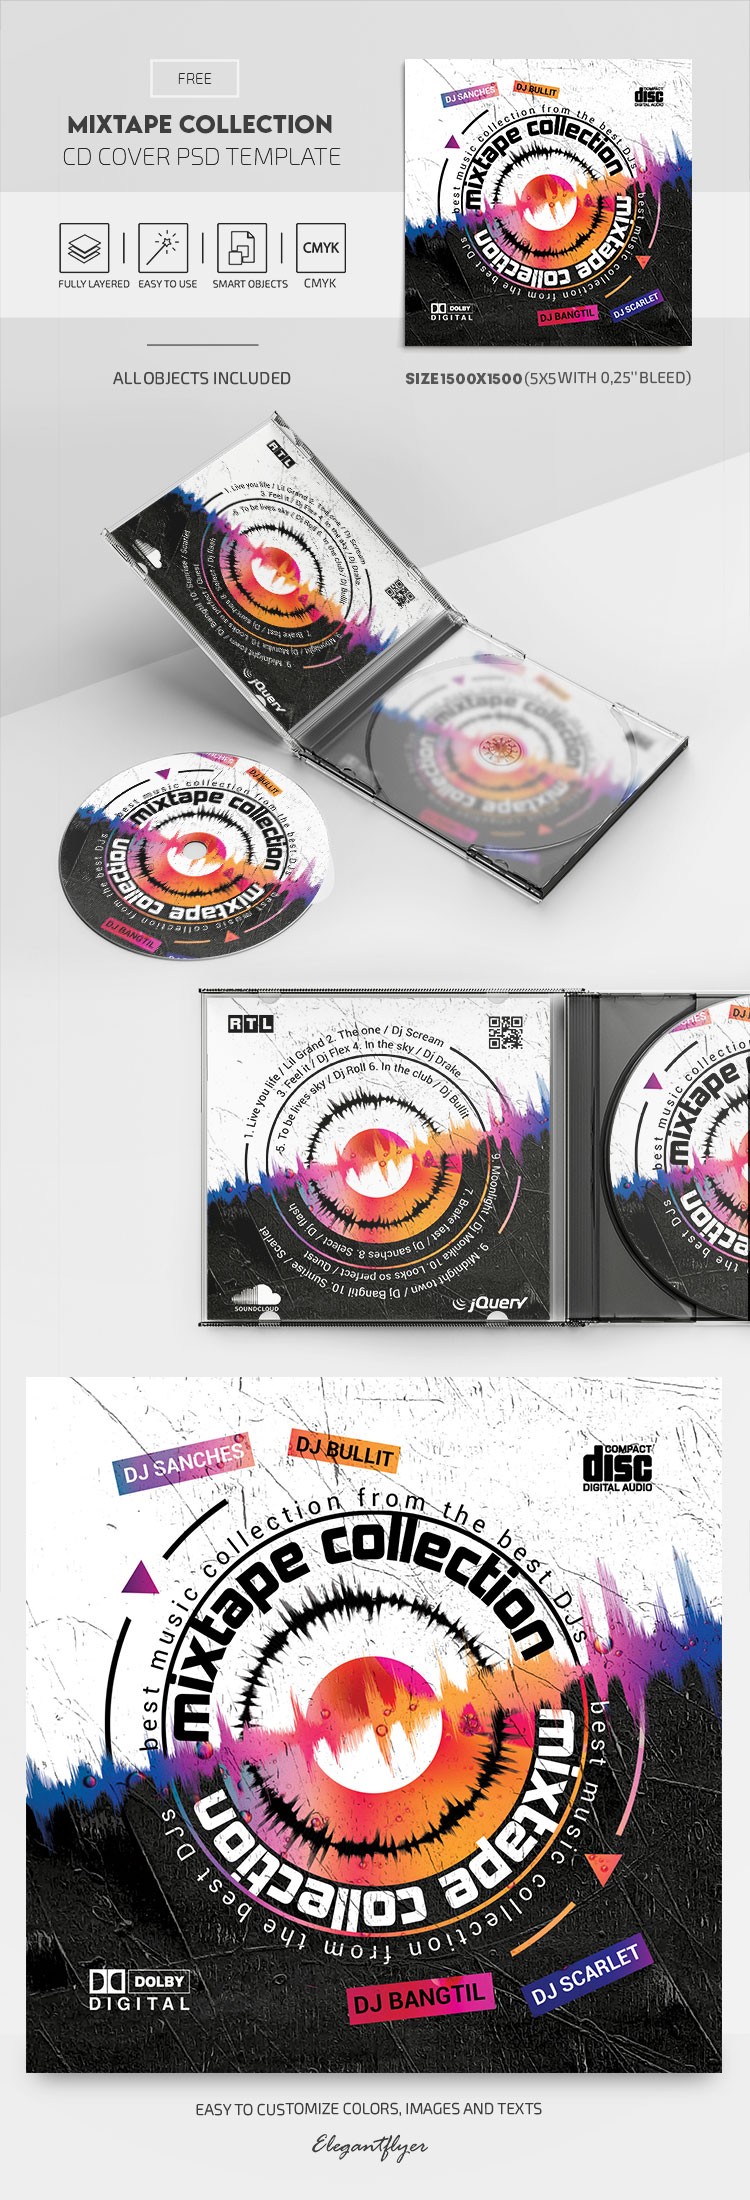 Okładka płyty CD z kolekcją mixtape'ów by ElegantFlyer